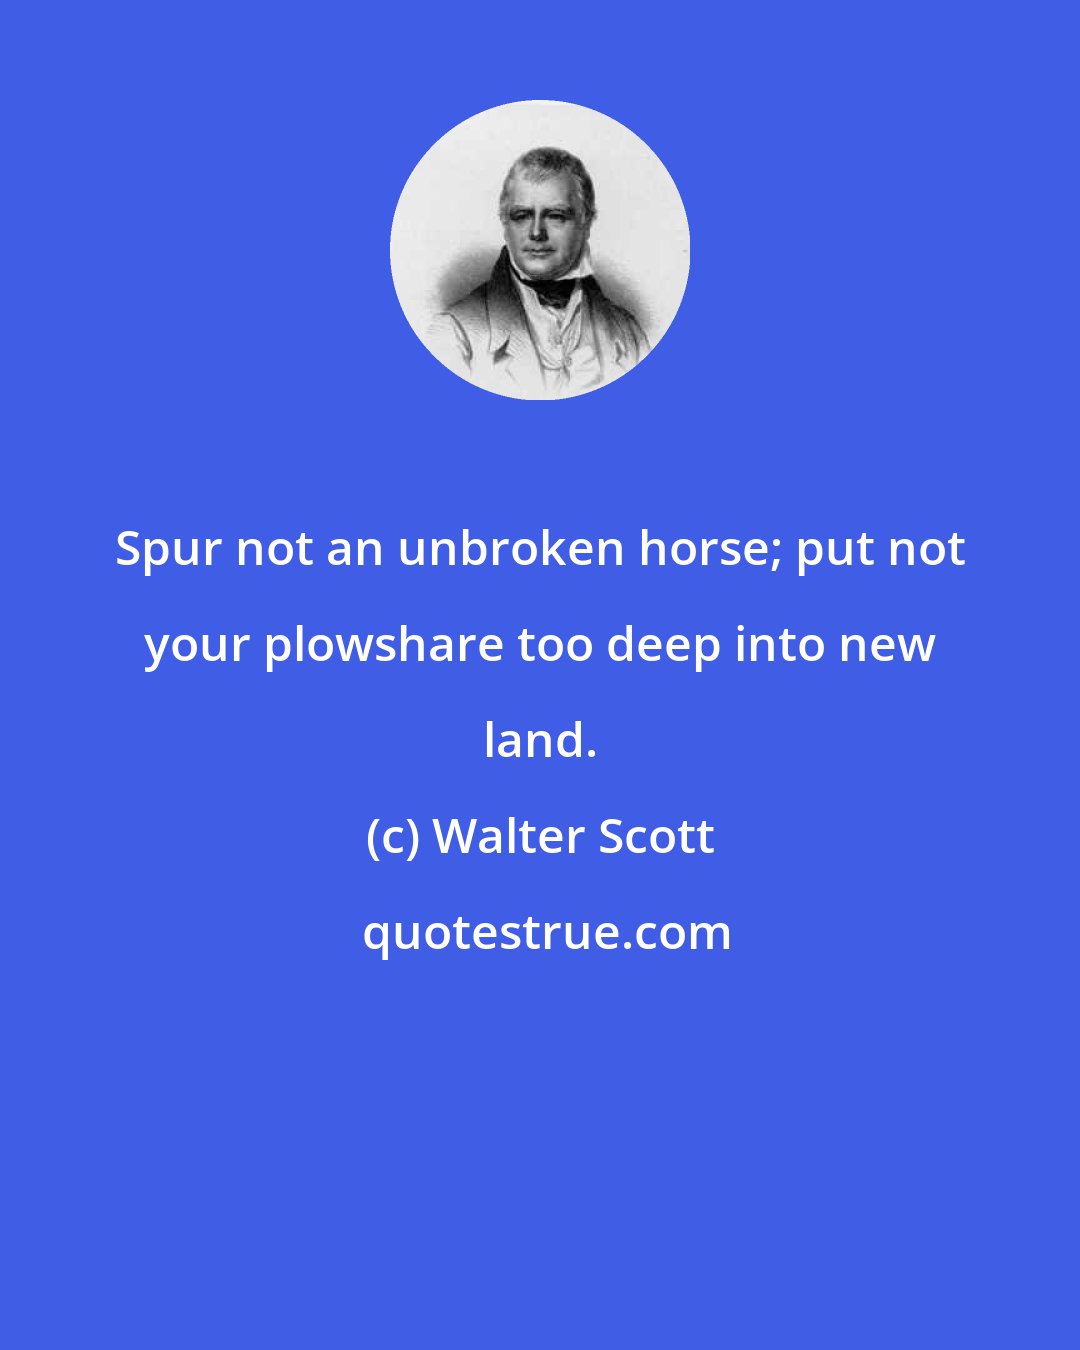 Walter Scott: Spur not an unbroken horse; put not your plowshare too deep into new land.